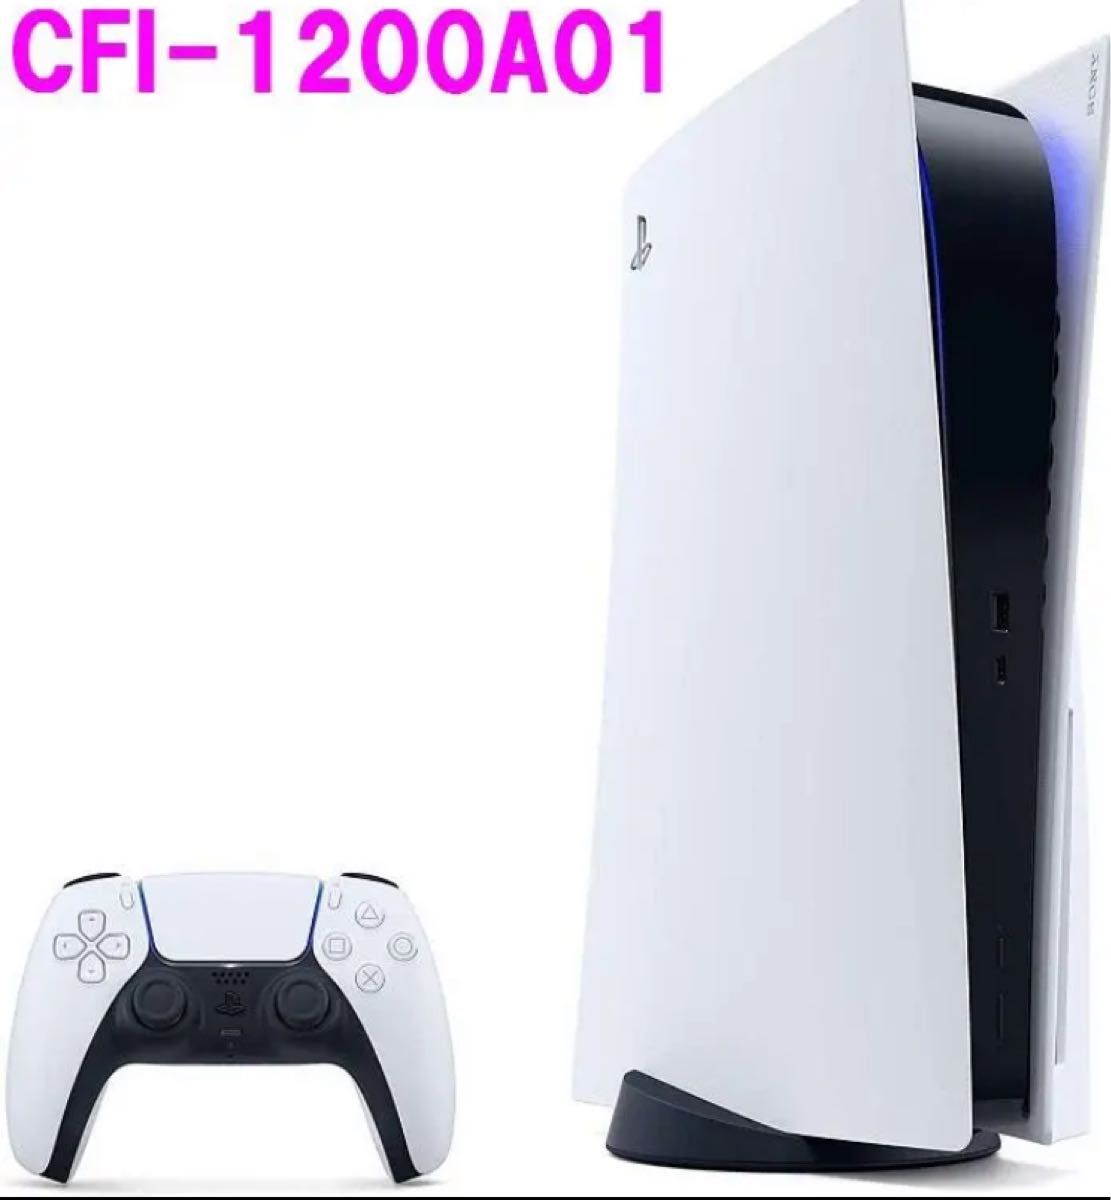 新品】 新型 PlayStation 5 (CFI-1200A01) 通常版 テレビゲーム 